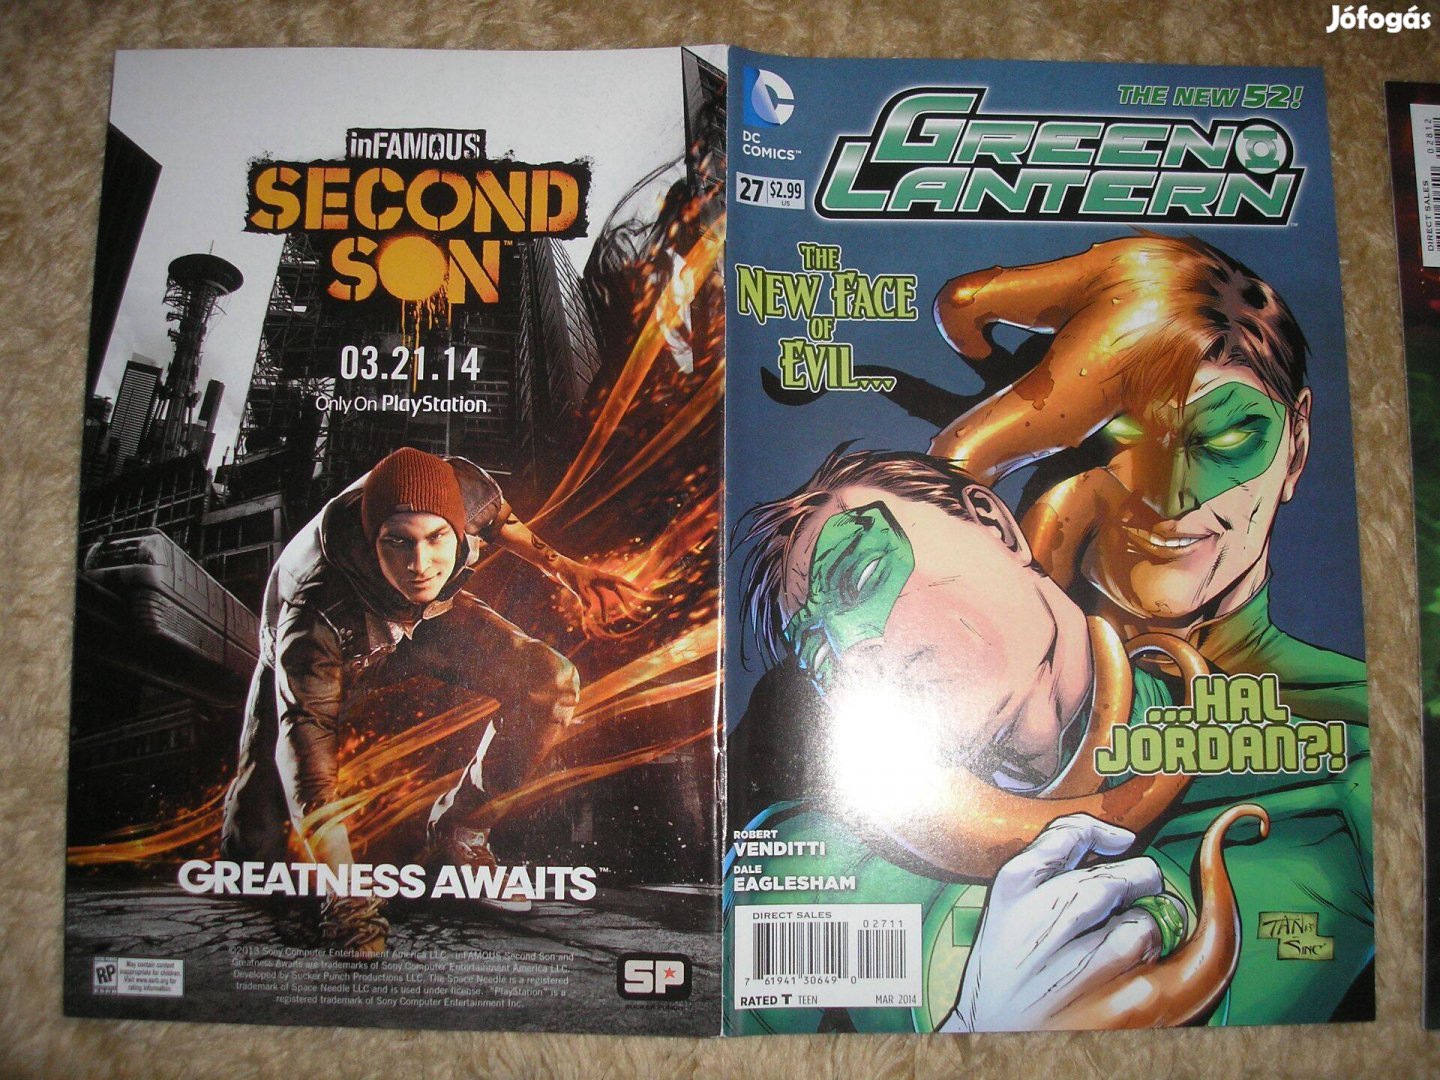 Green Lantern (2011-es sorozat) amerikai DC képregény 27. száma eladó!